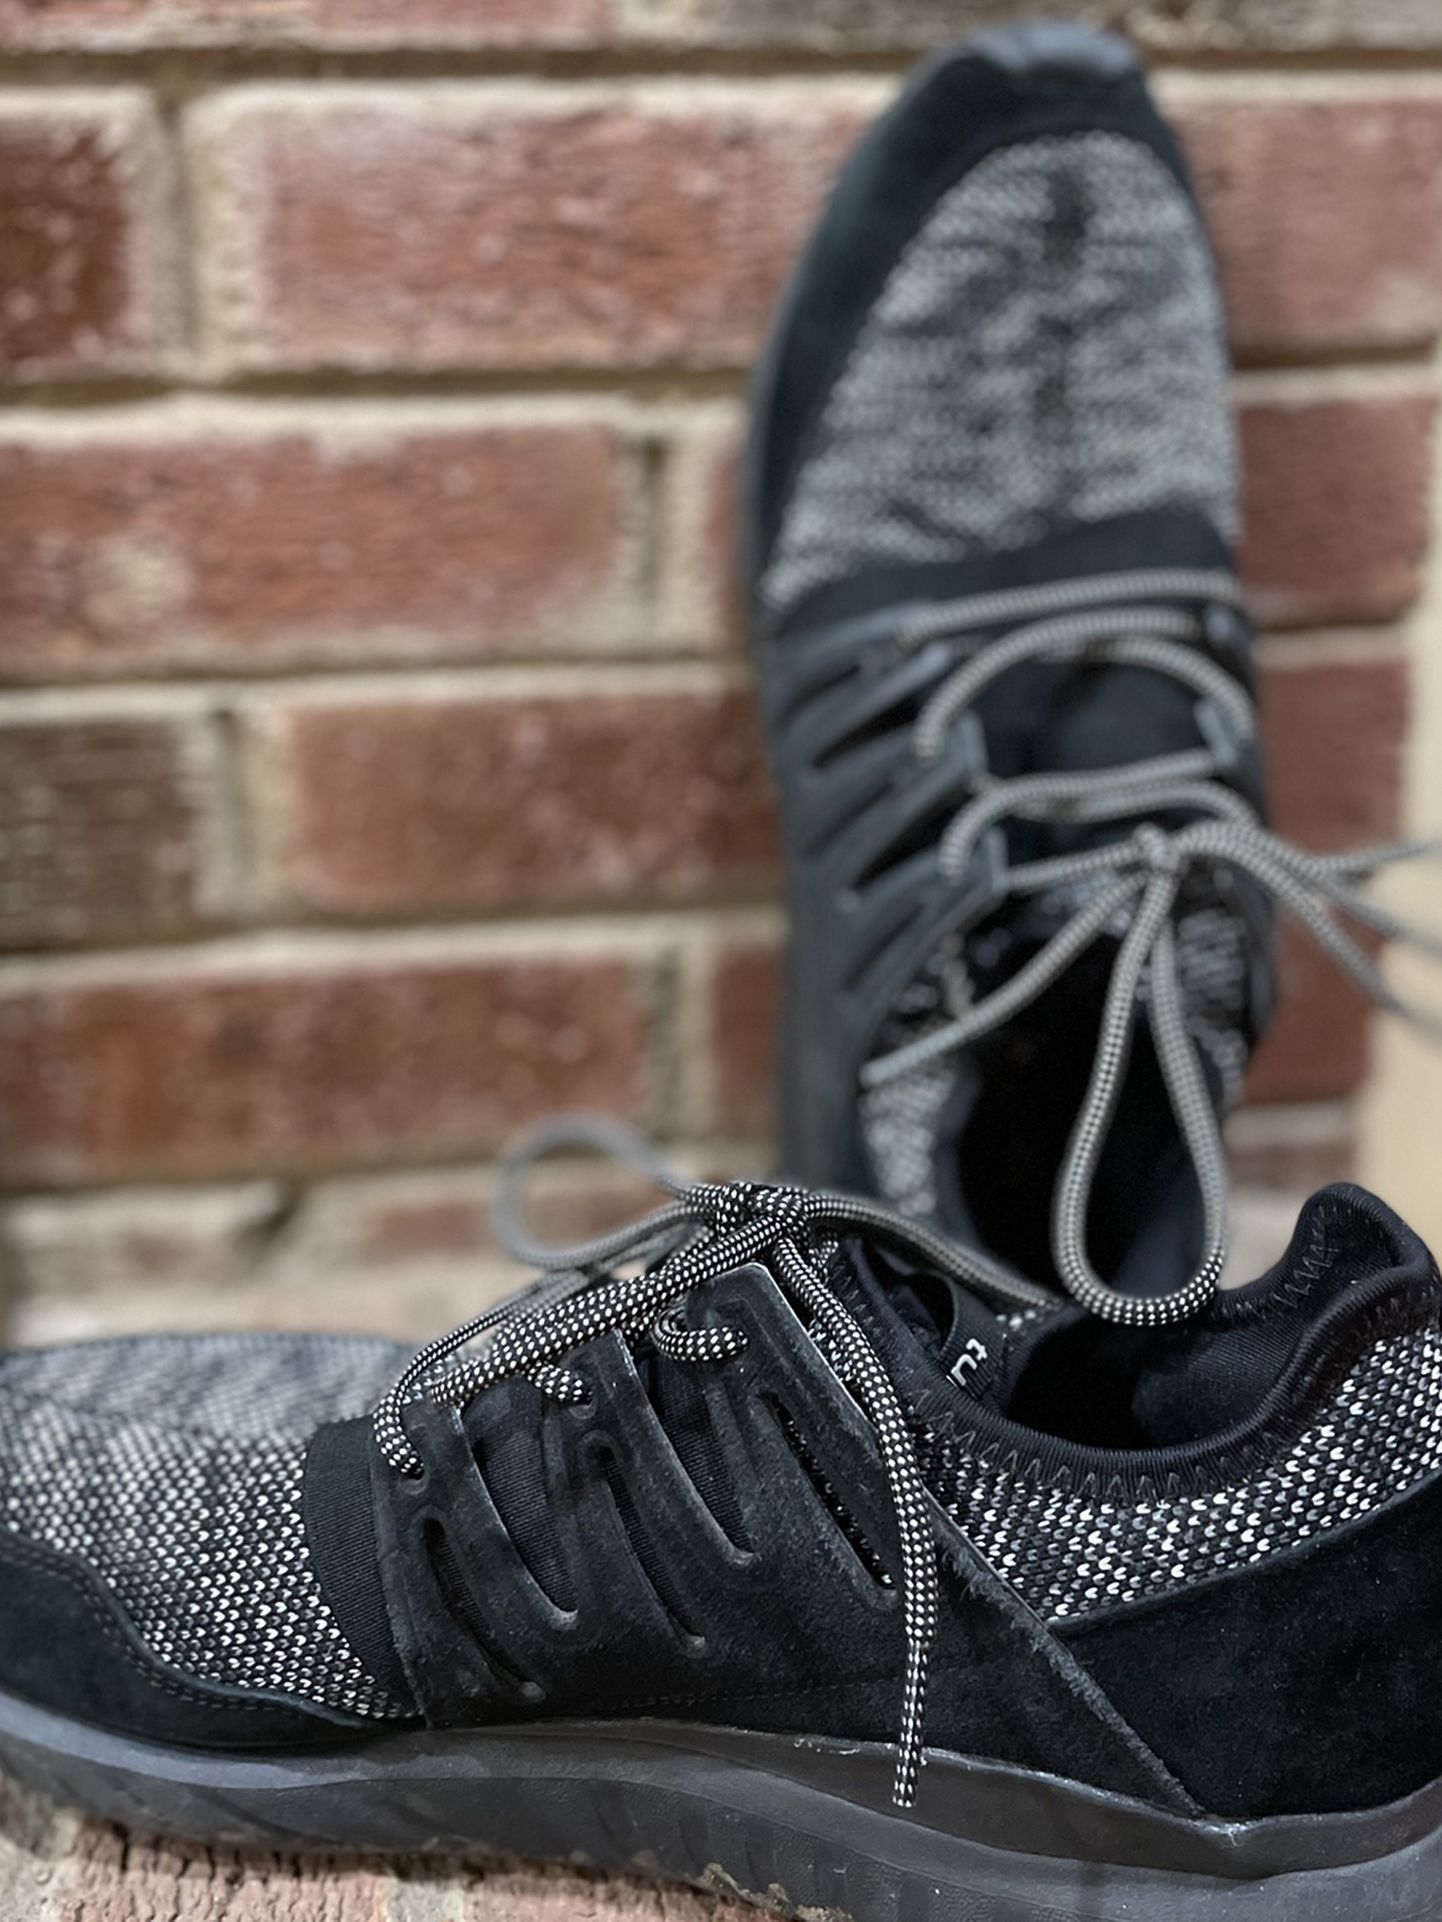 Men’s Adidas Shoes - Tubular Radial (Size 10.5)